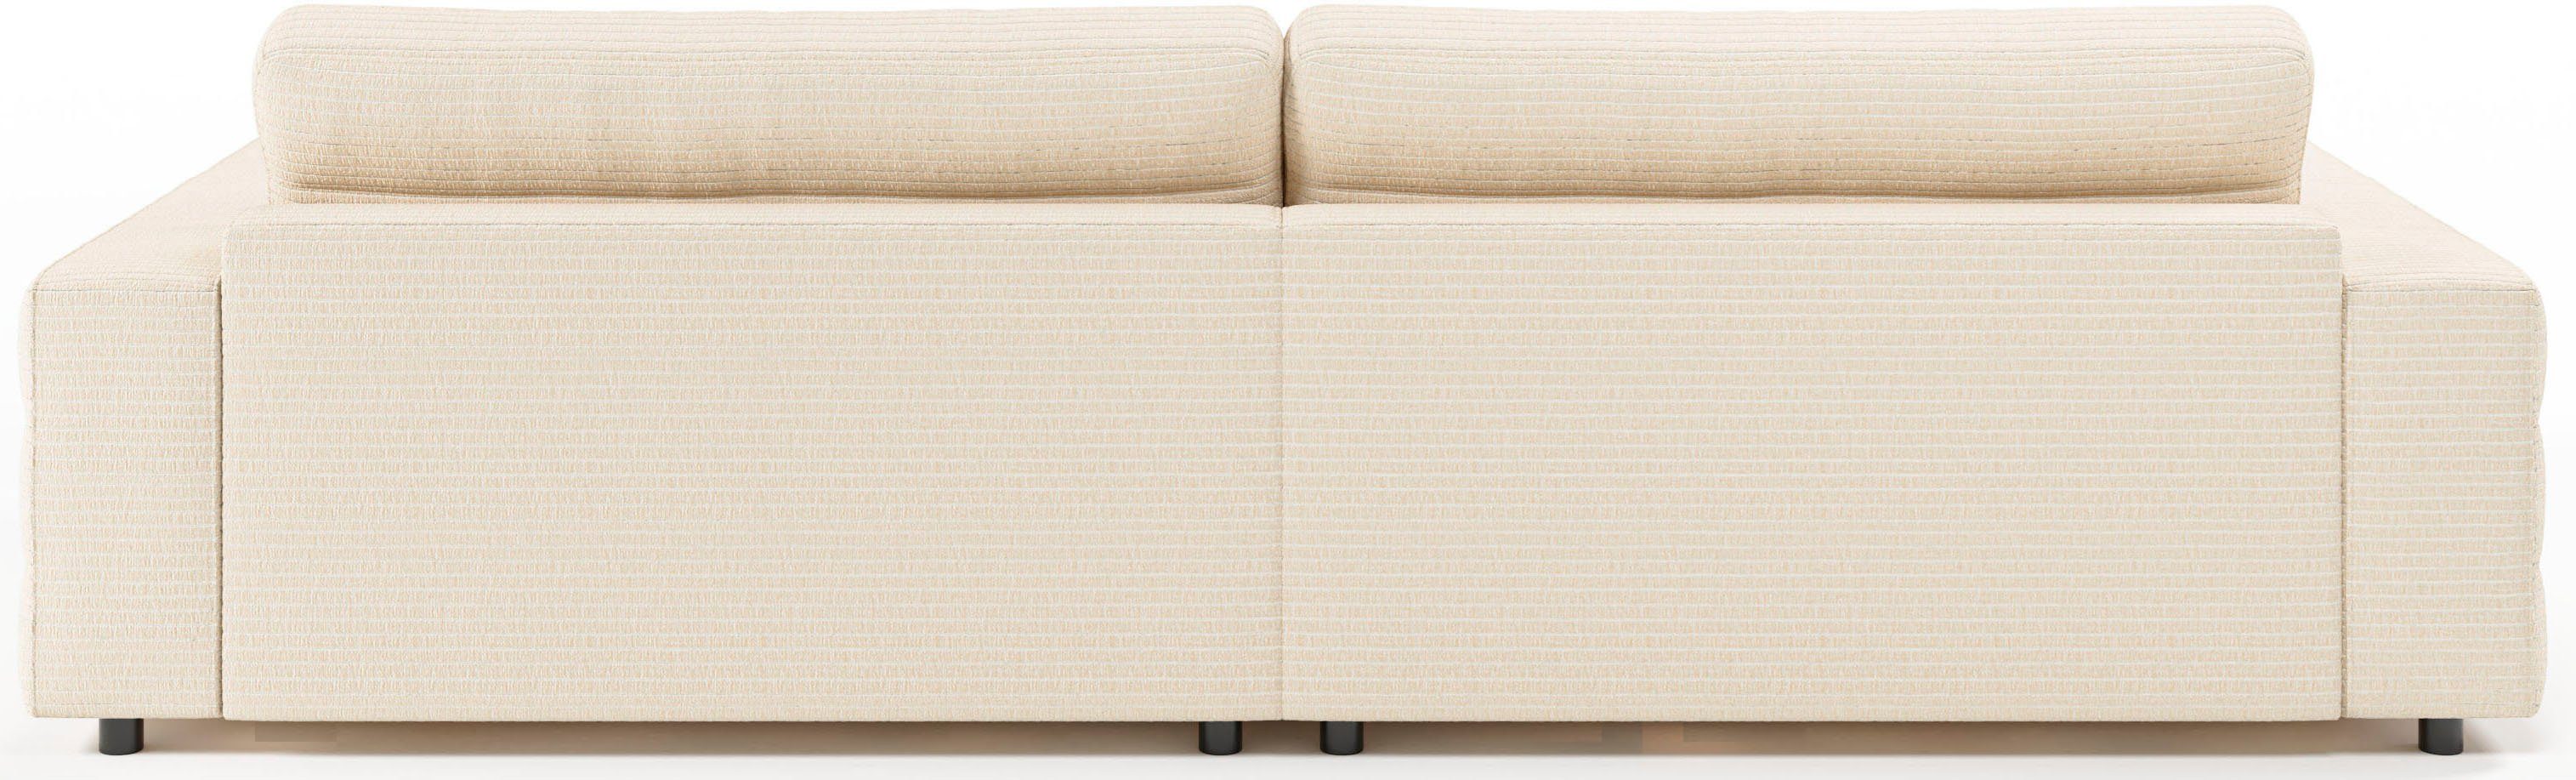 Big-Sofa 3C Candy Stripes, mit Rückenkissen, feiner Lose Quersteppung natur